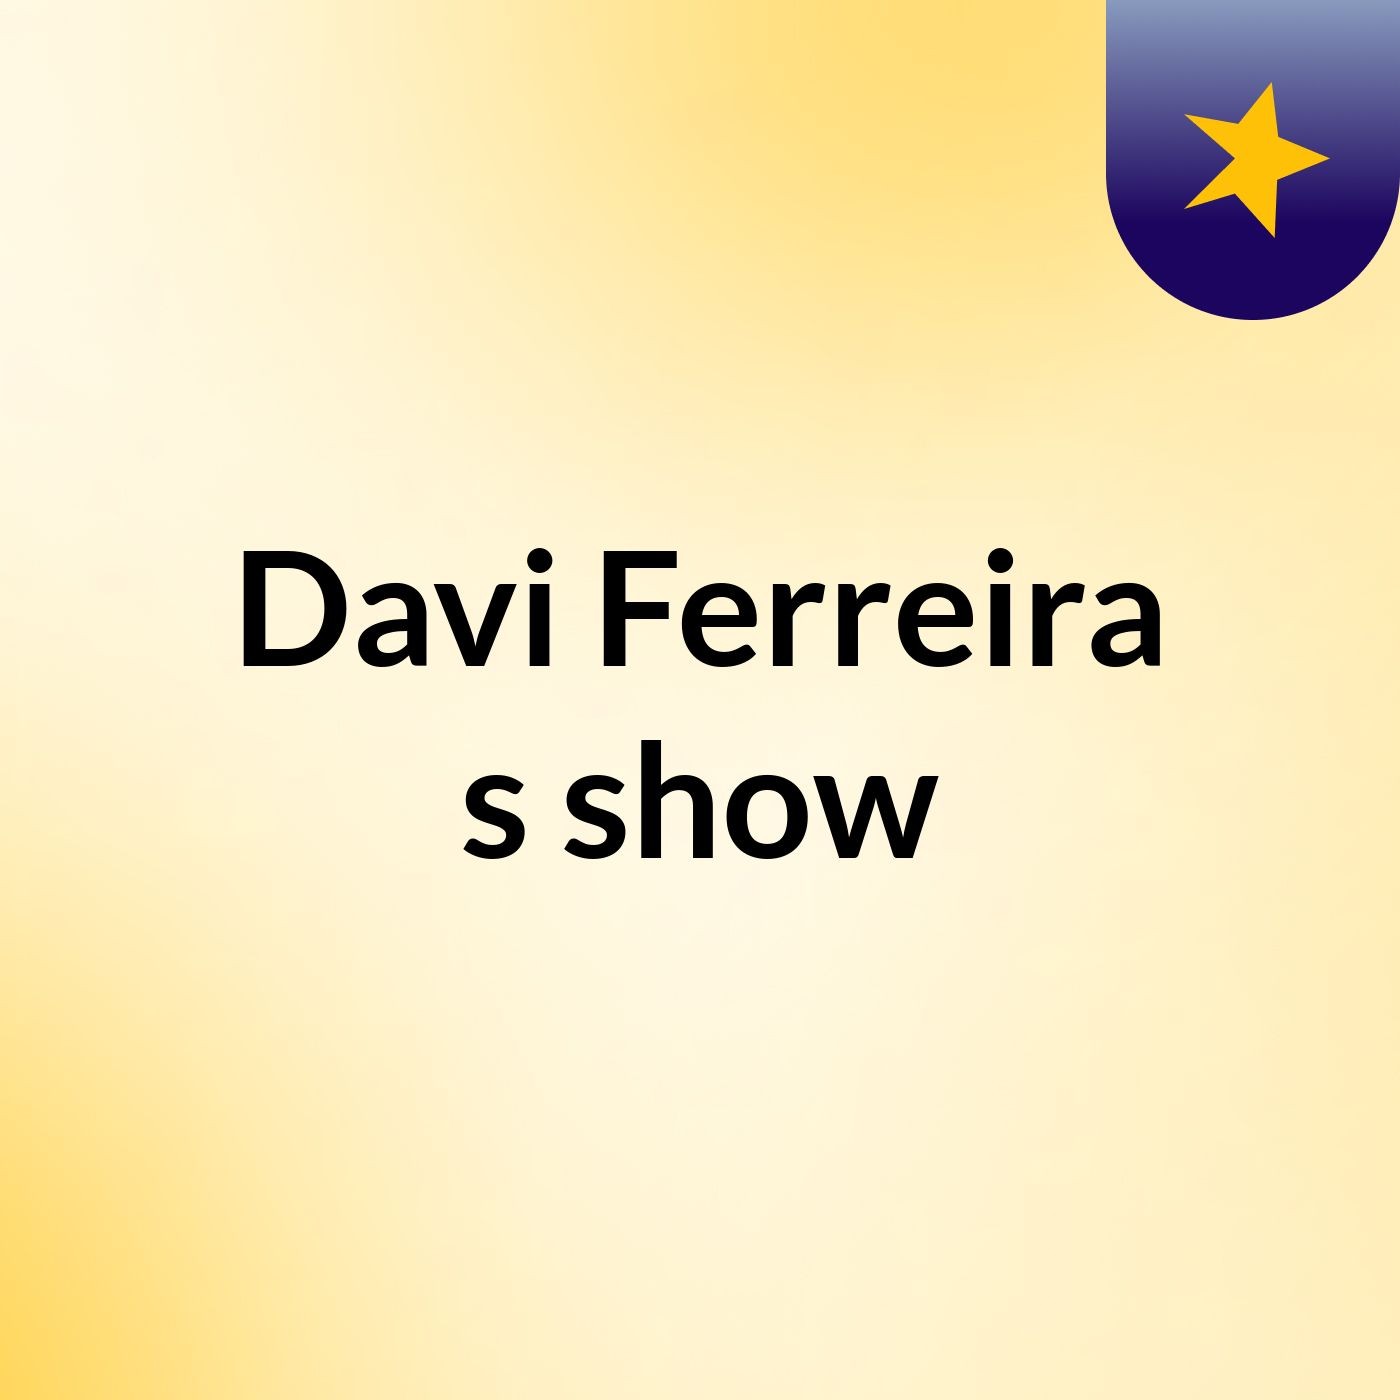 Davi Ferreira's show